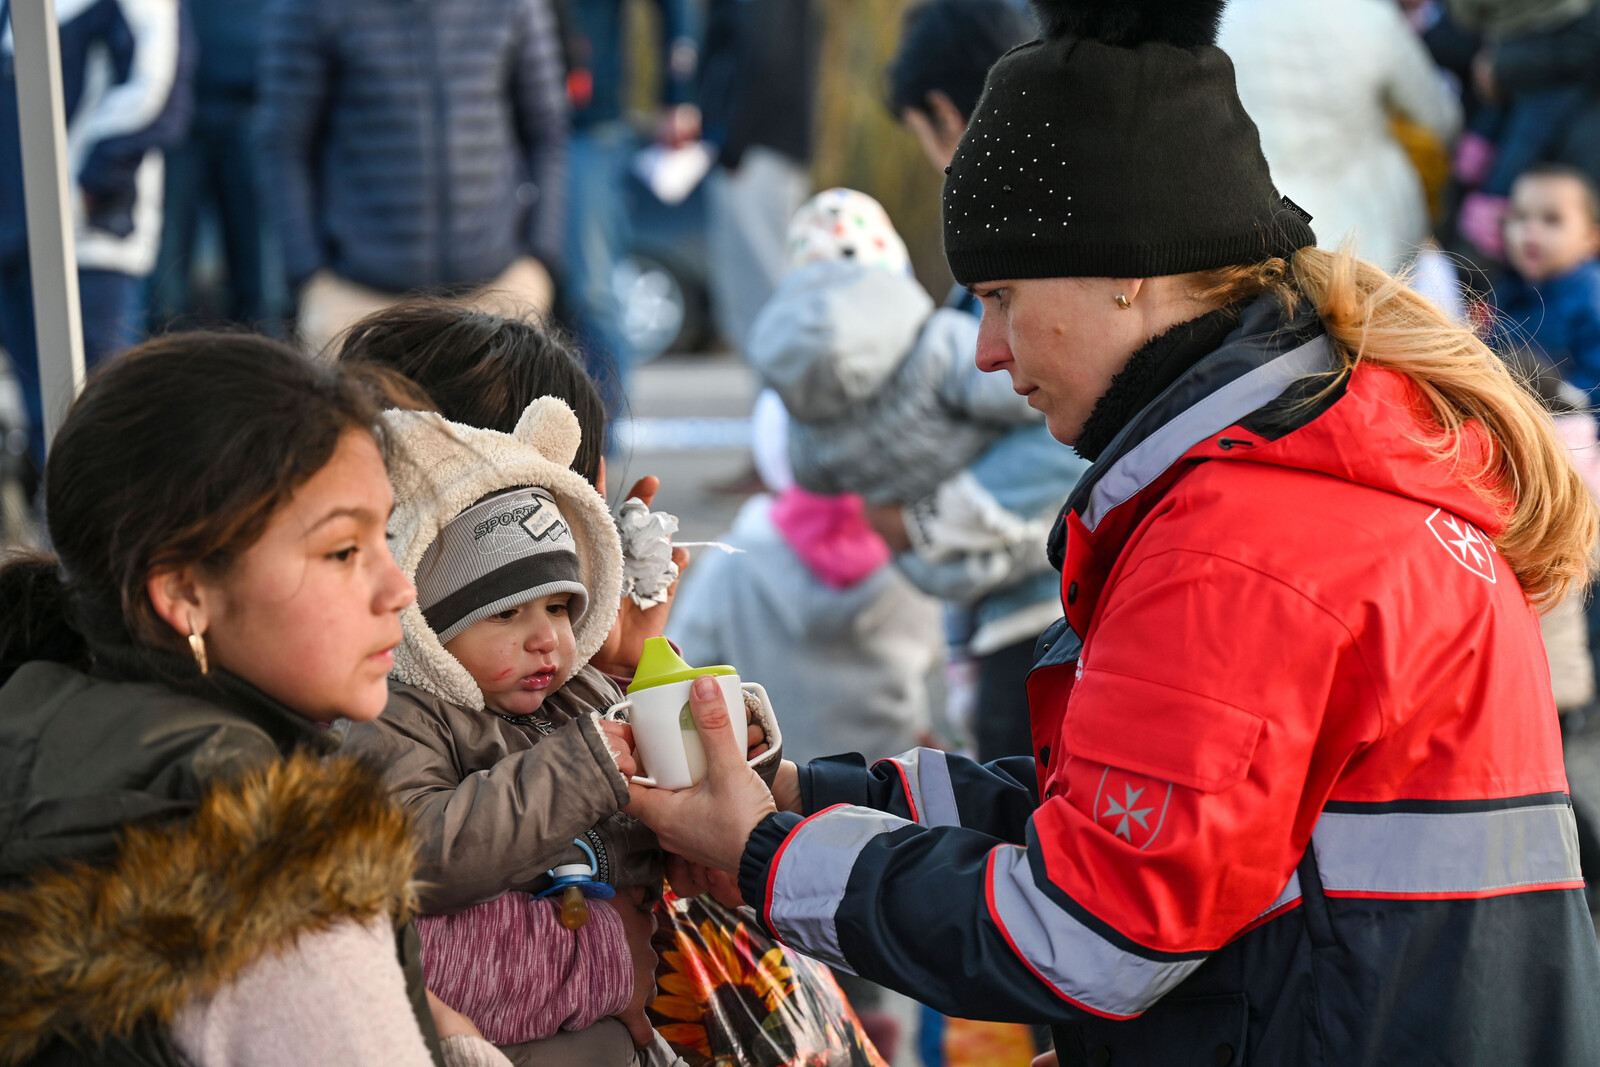 Ungarische Malteser versorgen Geflüchtete in Beregsurany an der ukrainischen Grenze